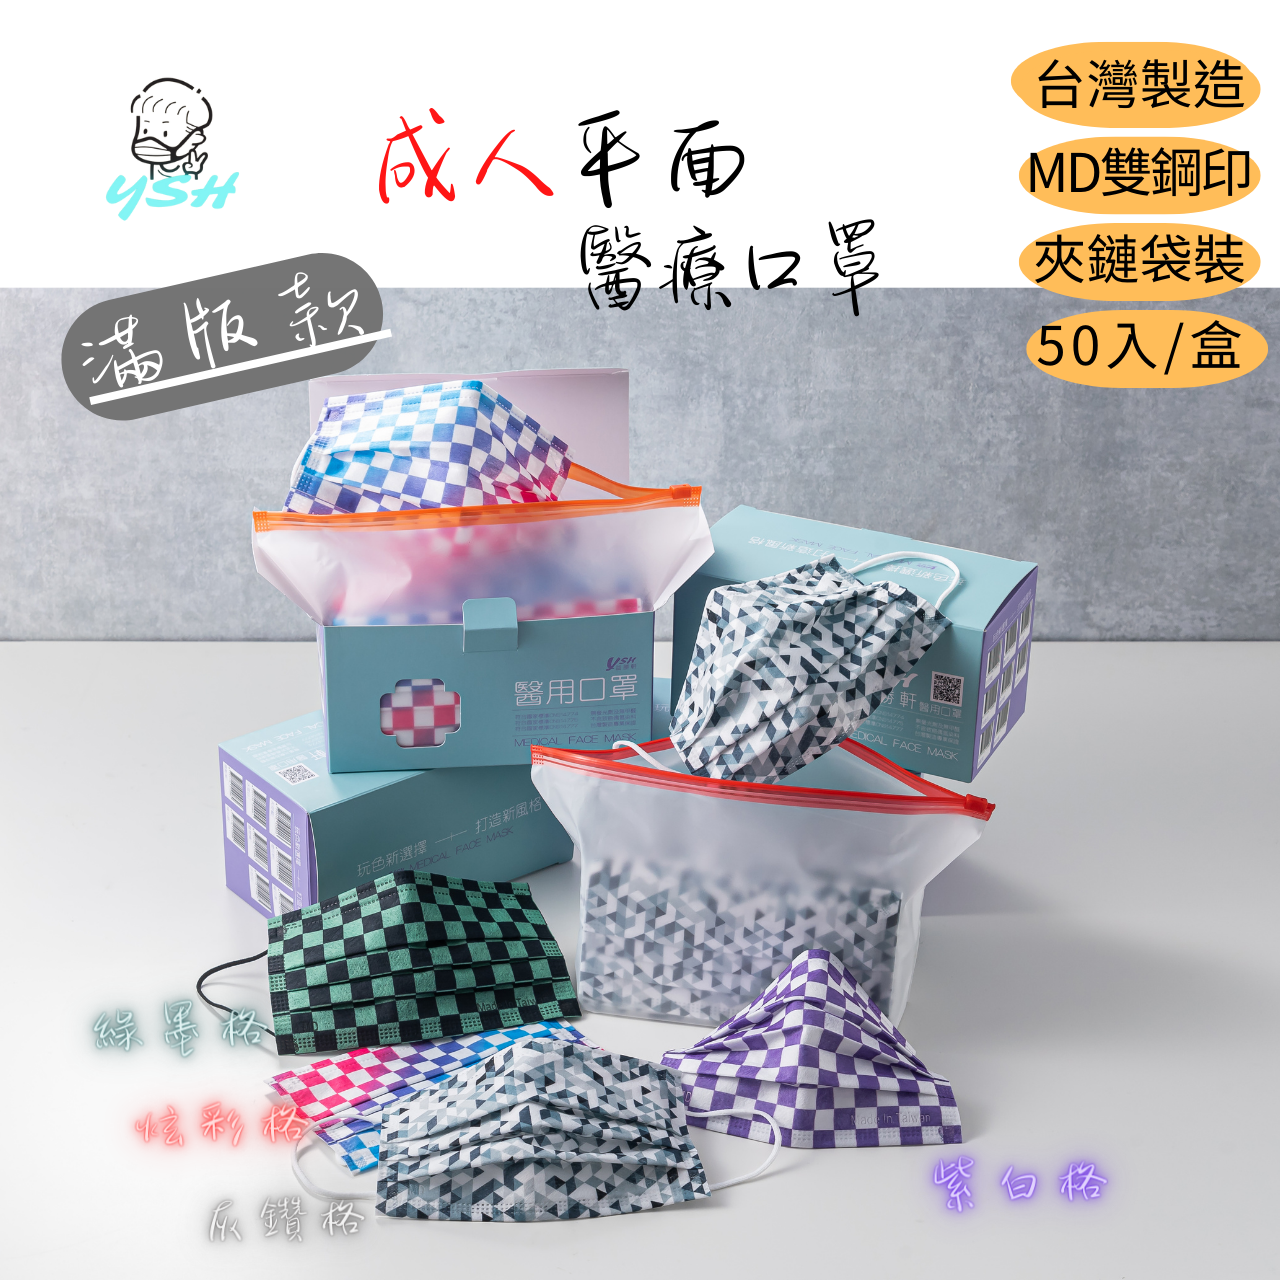 【快速出貨】YSH益勝軒 親子款醫療口罩-台灣製造50入/盒/夾鏈袋裝 滿板 MD雙鋼印